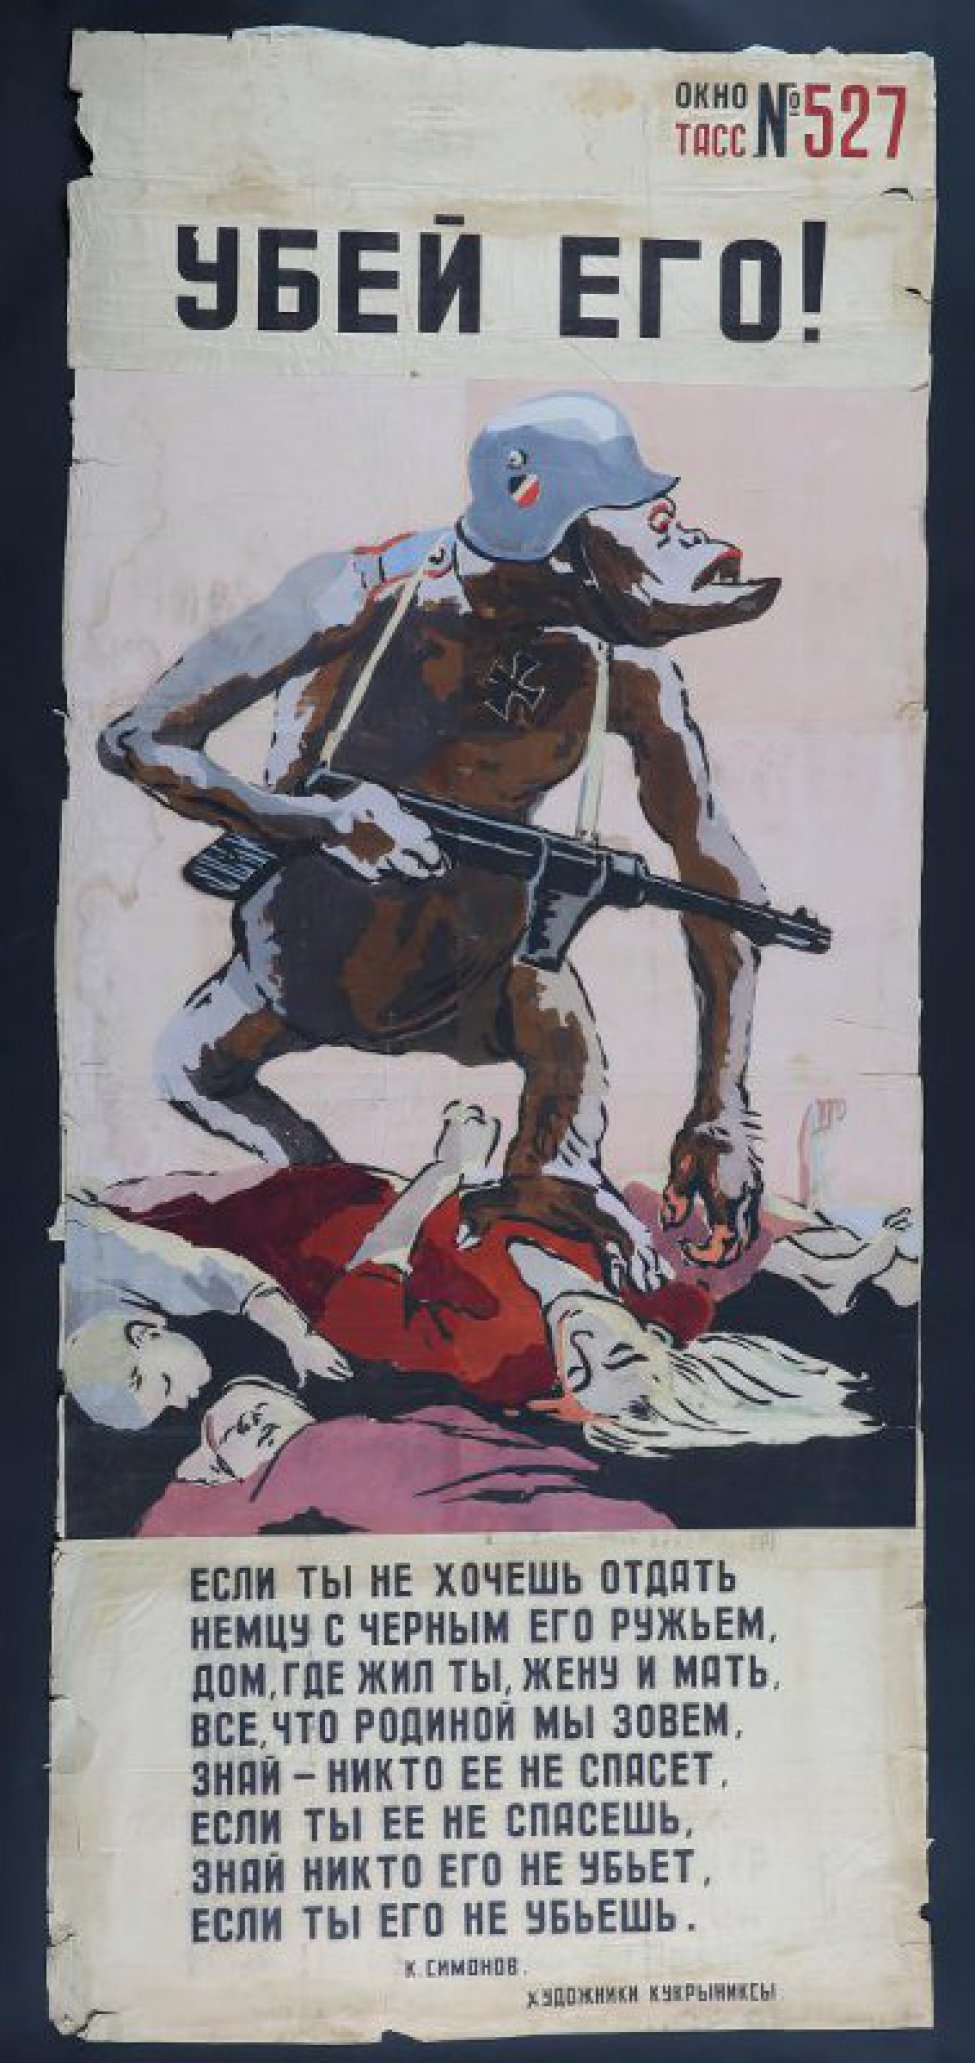 Изображен фашист в виде гориллы, стоящий на трупах, текст К.Симонова " Если ты не хочешь отдать немцу с черным его ружьем, дом, где  жил ты, жену и мать..."